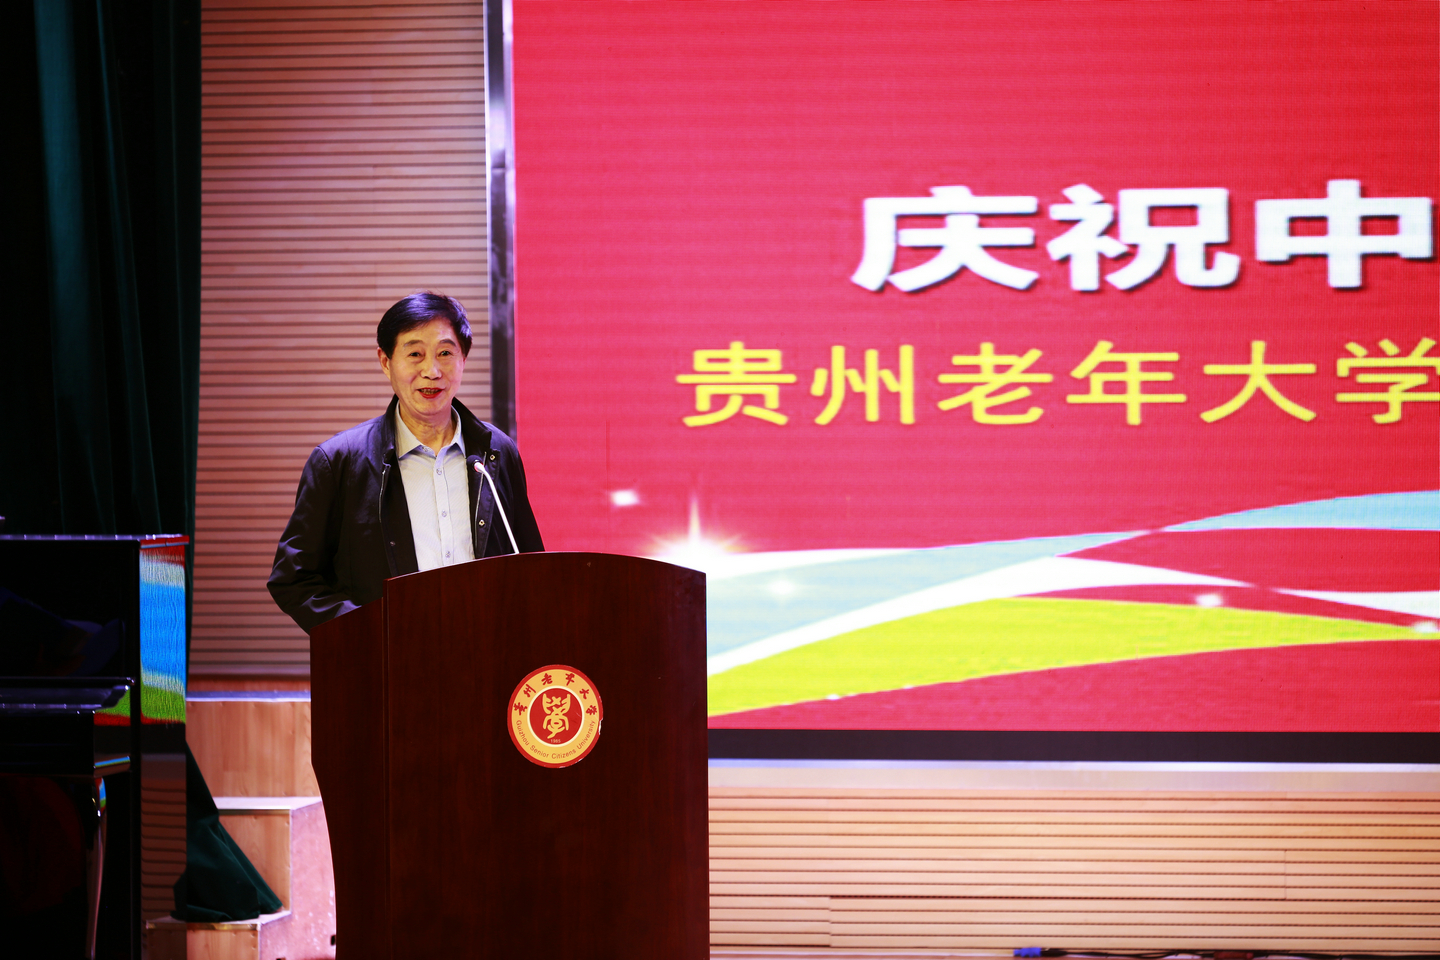 贵州老年大学隆重举行庆祝新中国成立70周年校园文化系列活动启动仪式